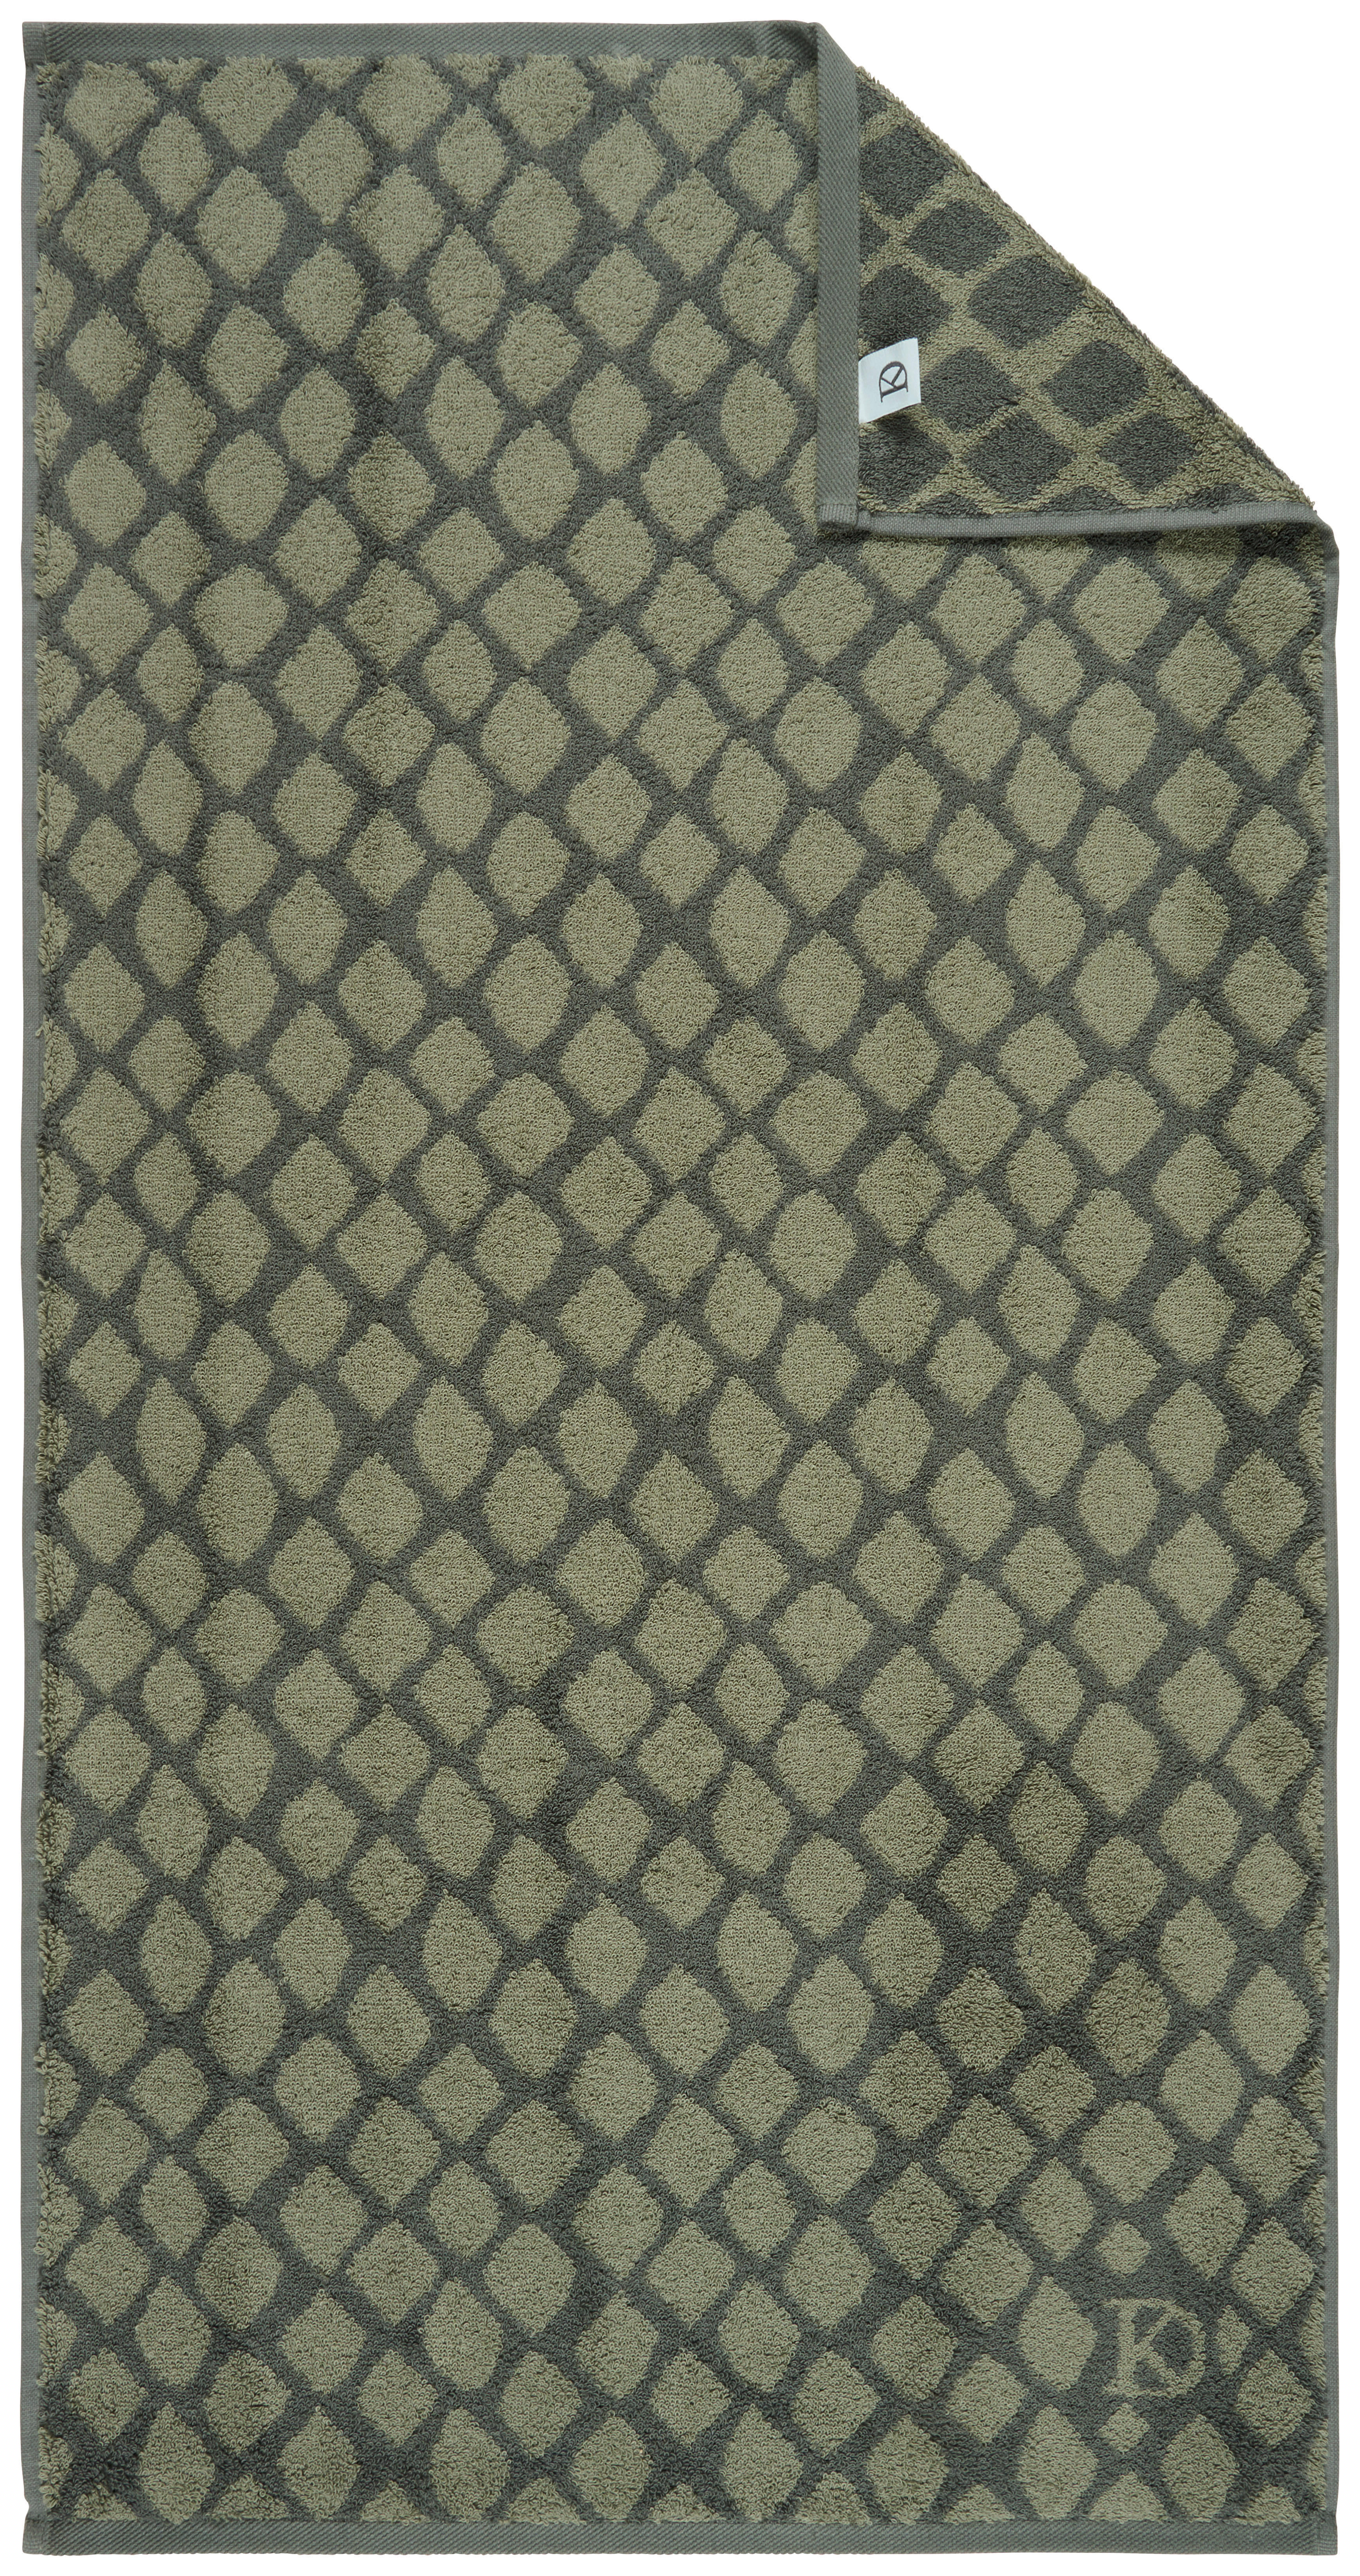 UTERÁK NA RUKY, 50/100 cm, zelená, tmavozelená - zelená/tmavozelená, Design, textil (50/100cm) - Dieter Knoll